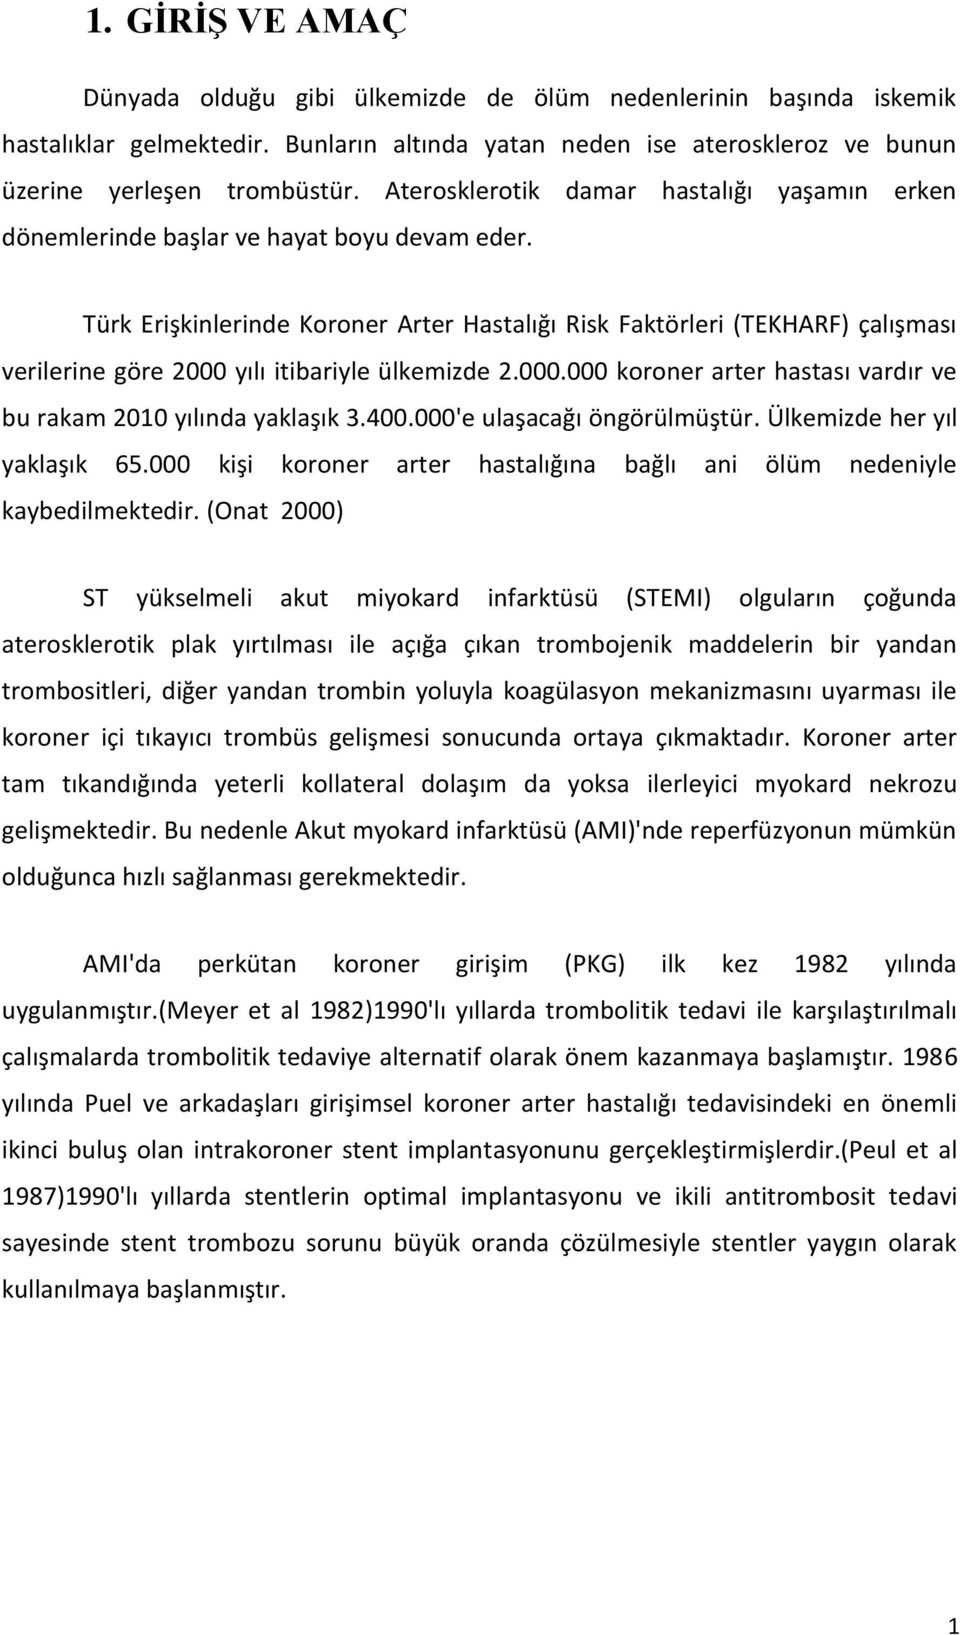 Türk Erişkinlerinde Koroner Arter Hastalığı Risk Faktörleri (TEKHARF) çalışması verilerine göre 2000 yılı itibariyle ülkemizde 2.000.000 koroner arter hastası vardır ve bu rakam 2010 yılında yaklaşık 3.